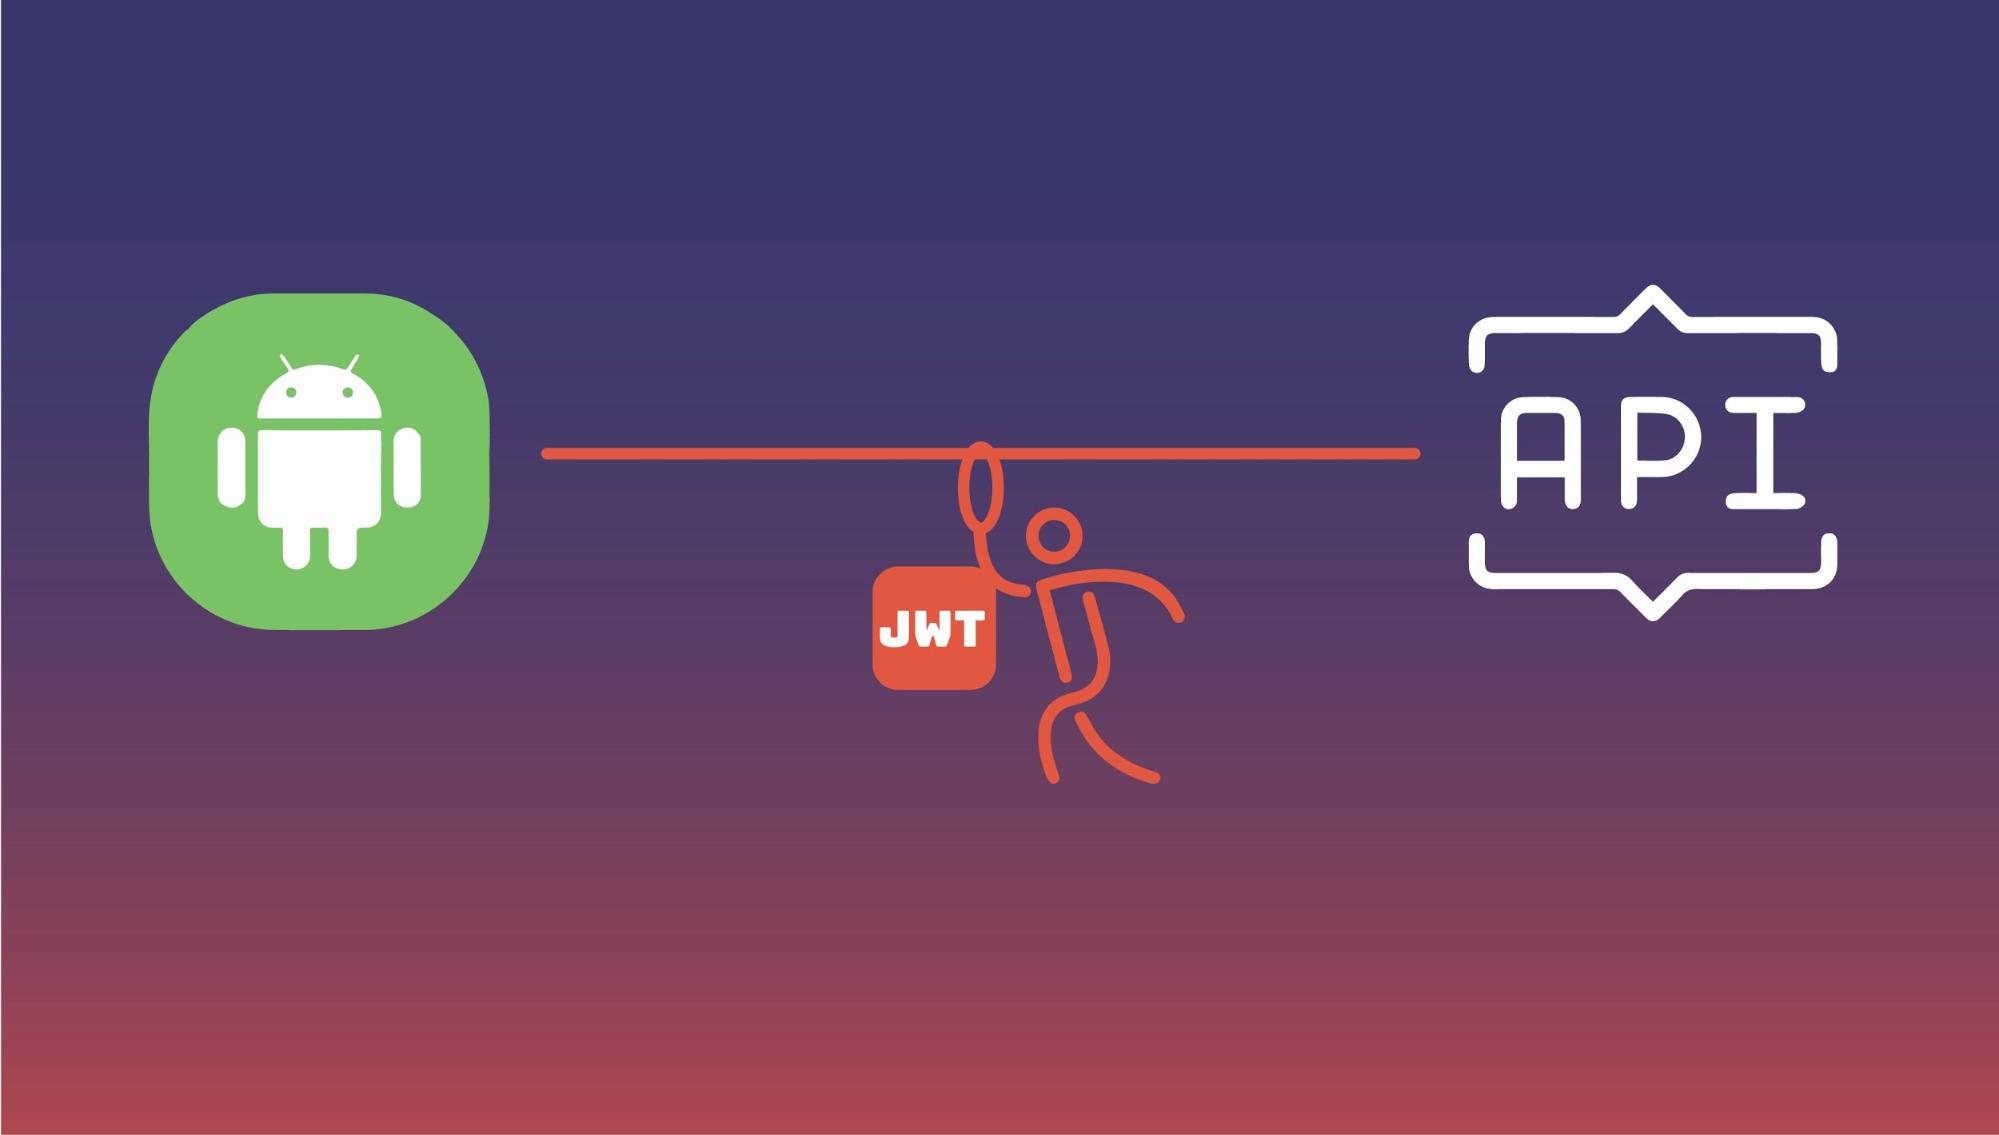 JWT provides secured API